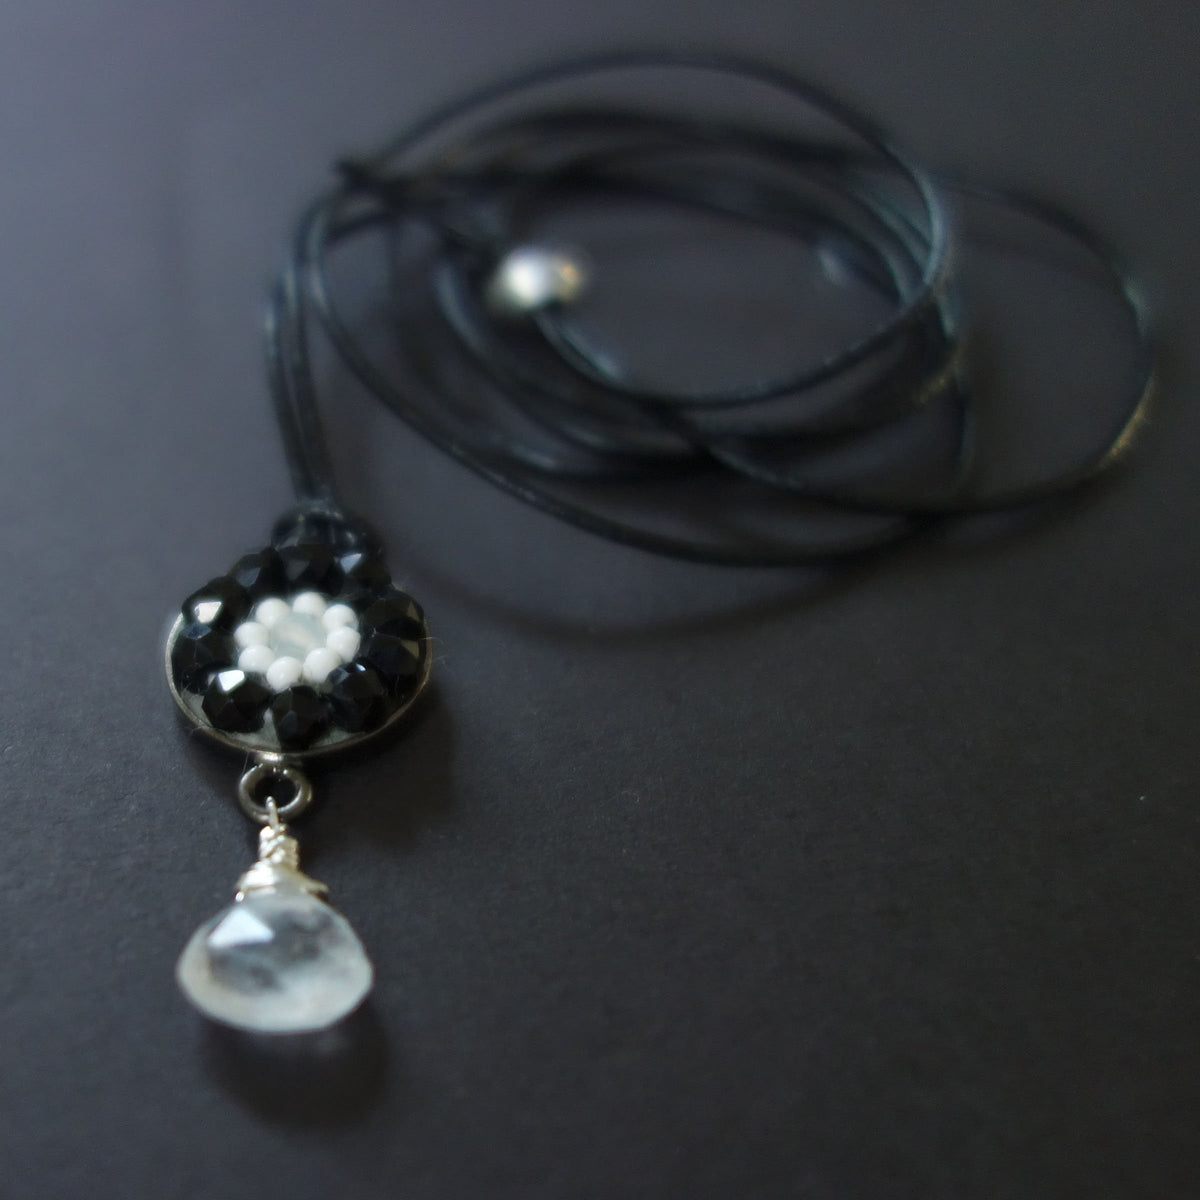 Black Onyx and Moonstone mosaic necklace/wrap bracelet